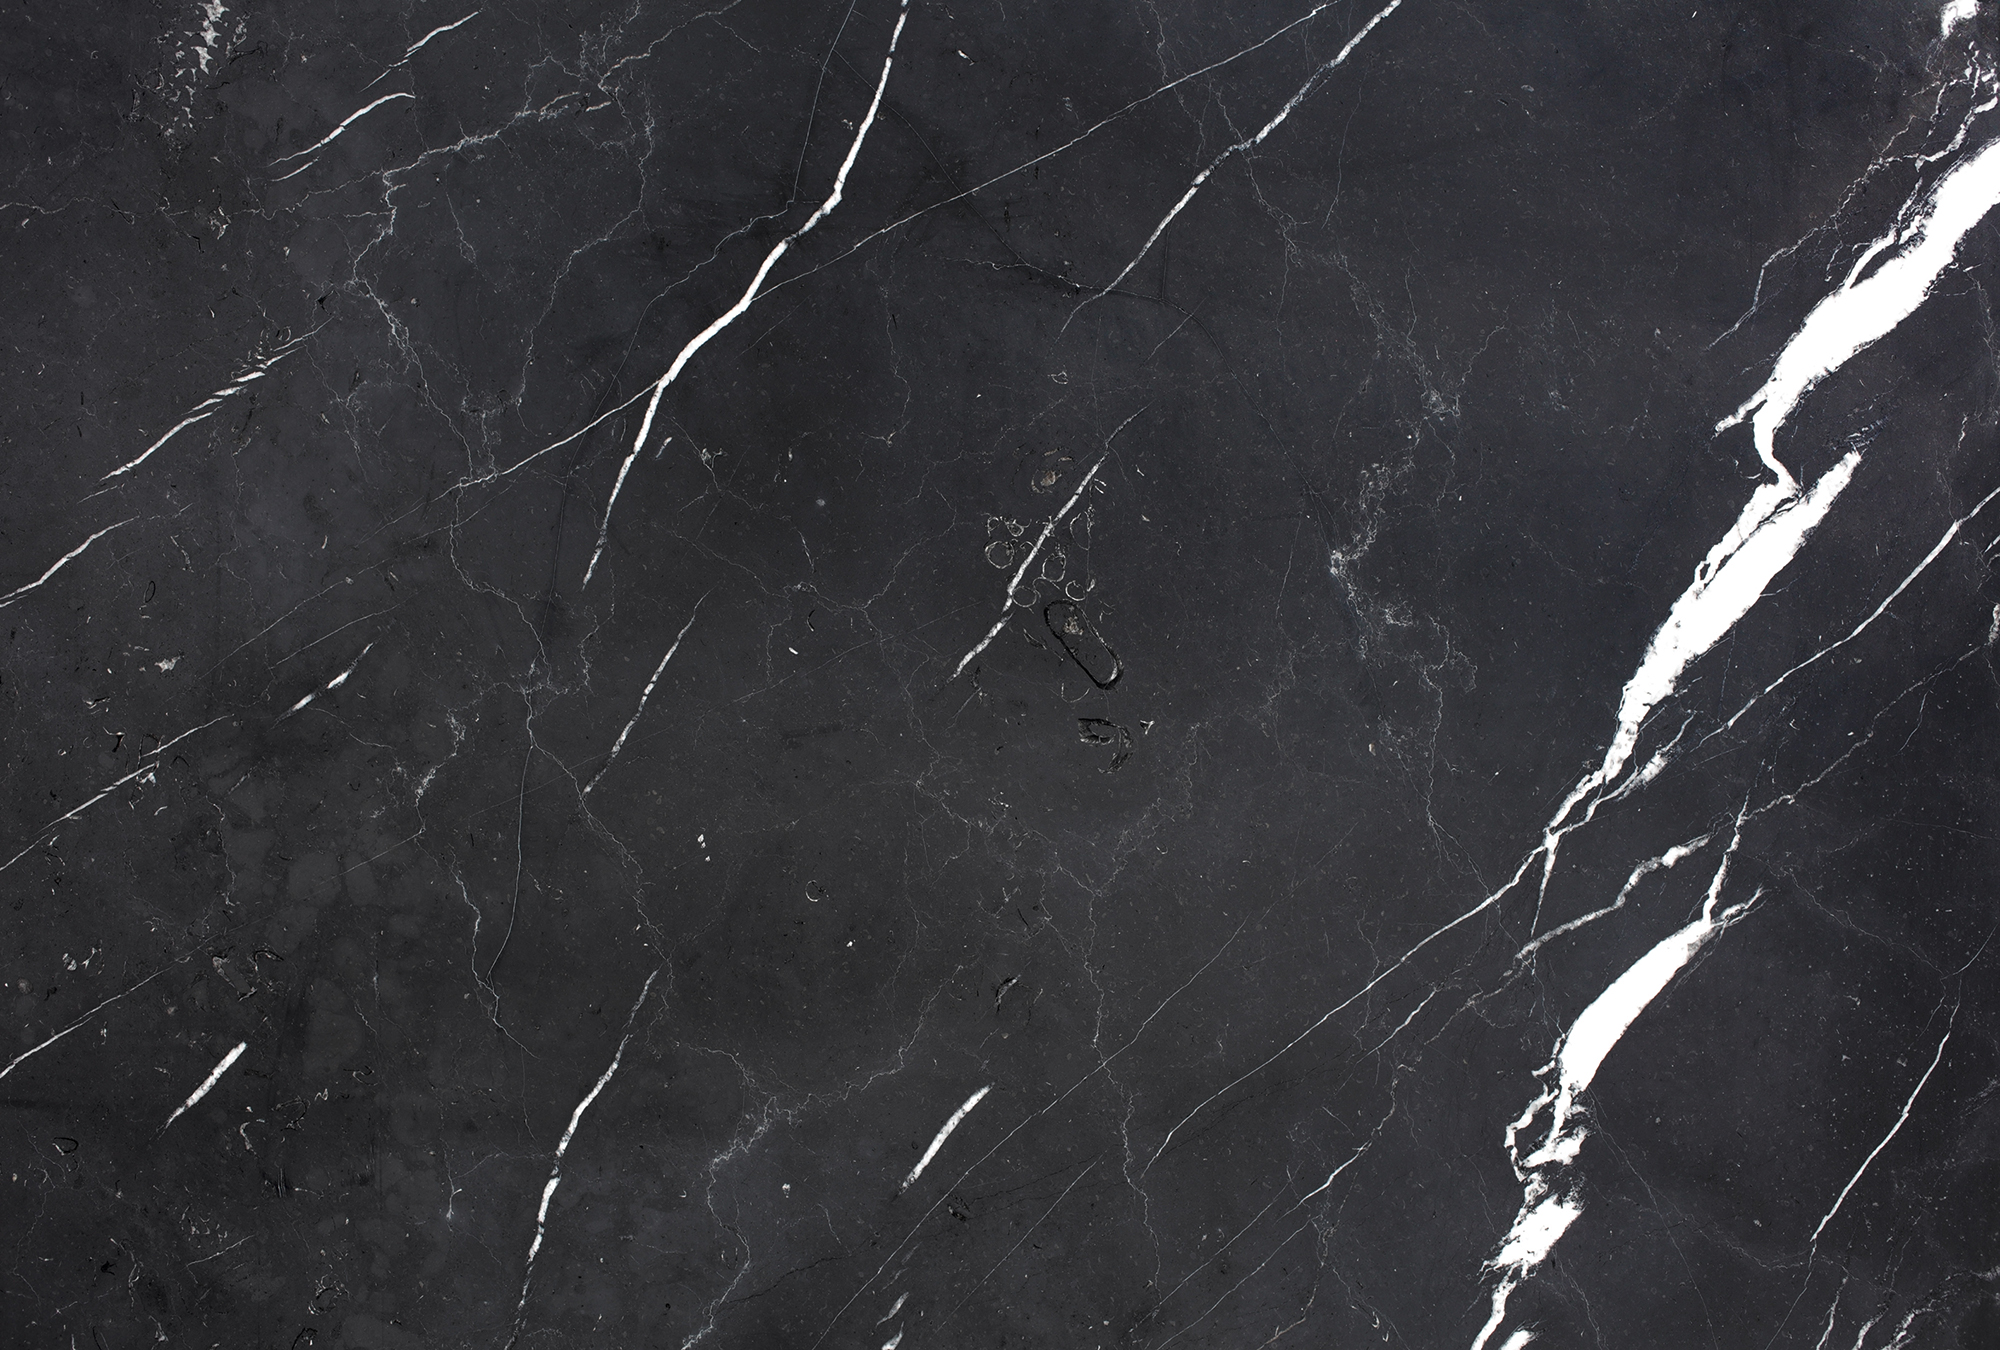             Fotomurali in marmo nero bianco marmorizzato - Nero, Bianco
        